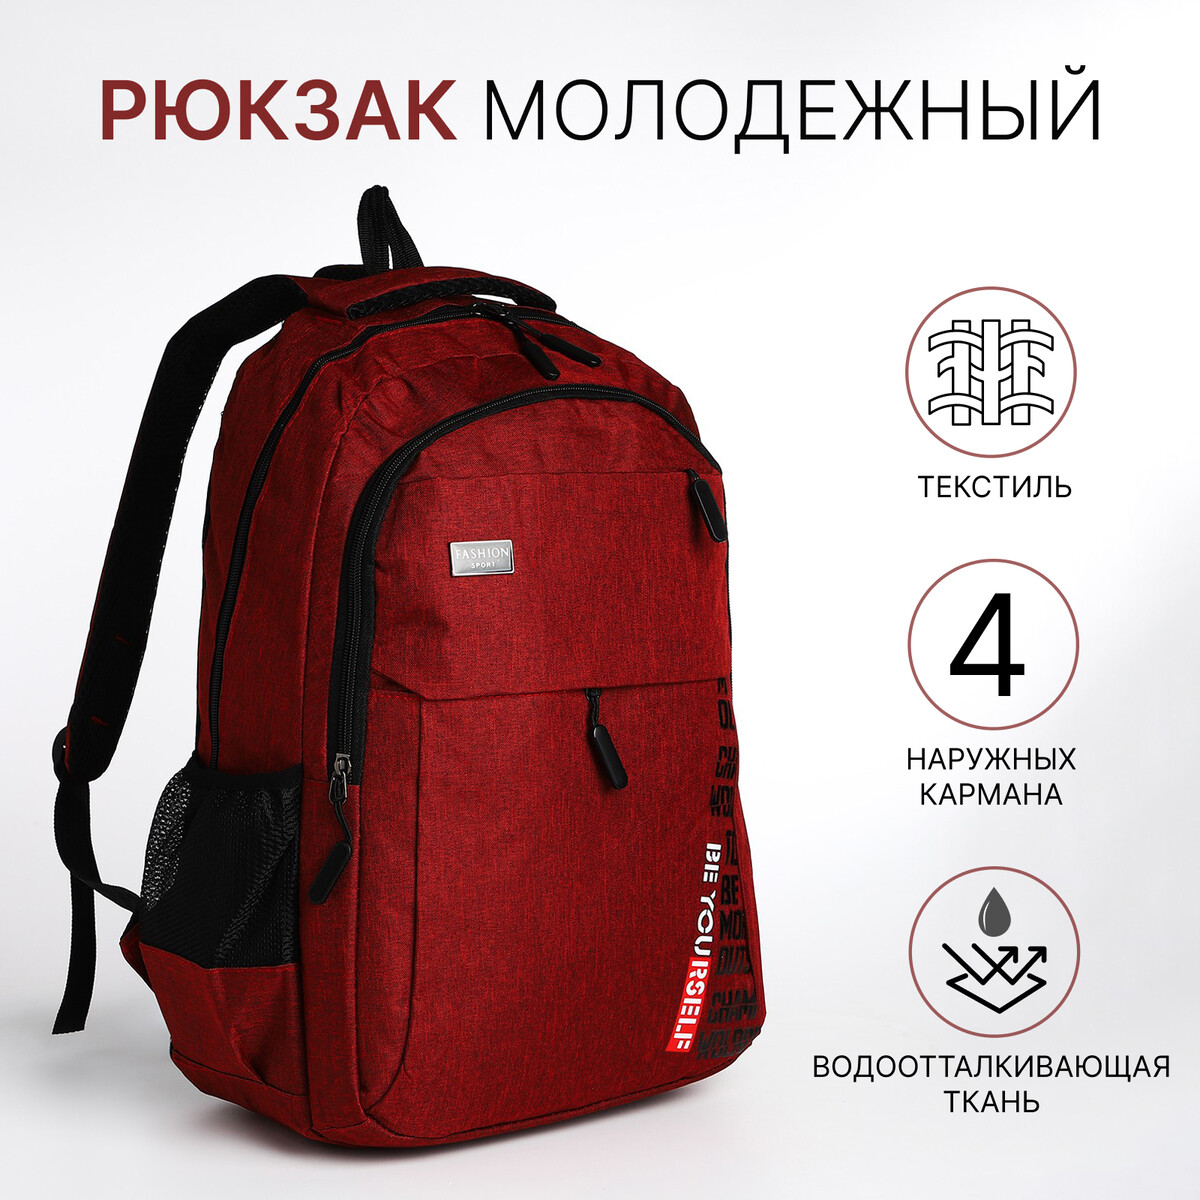 Рюкзак молодежный на молнии, 4 кармана, цвет бордовый